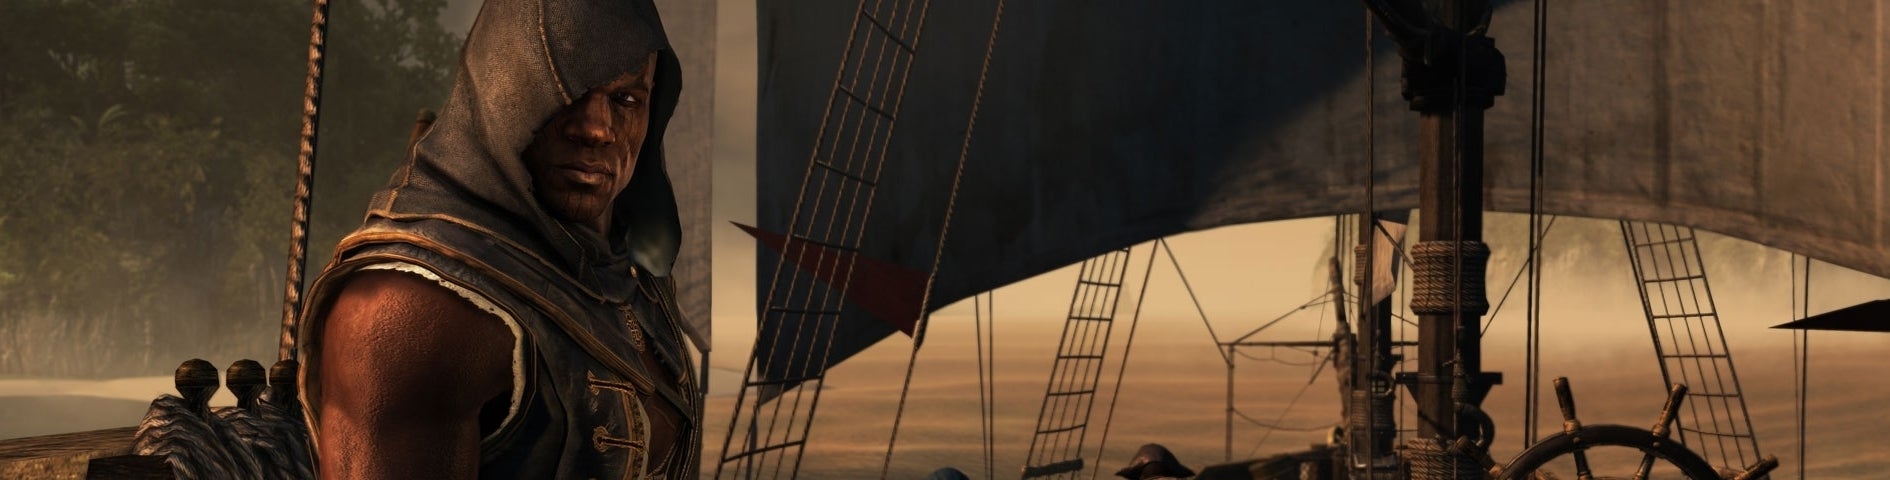 Obrazki dla Assassin's Creed 4: Freedom Cry DLC - Recenzja